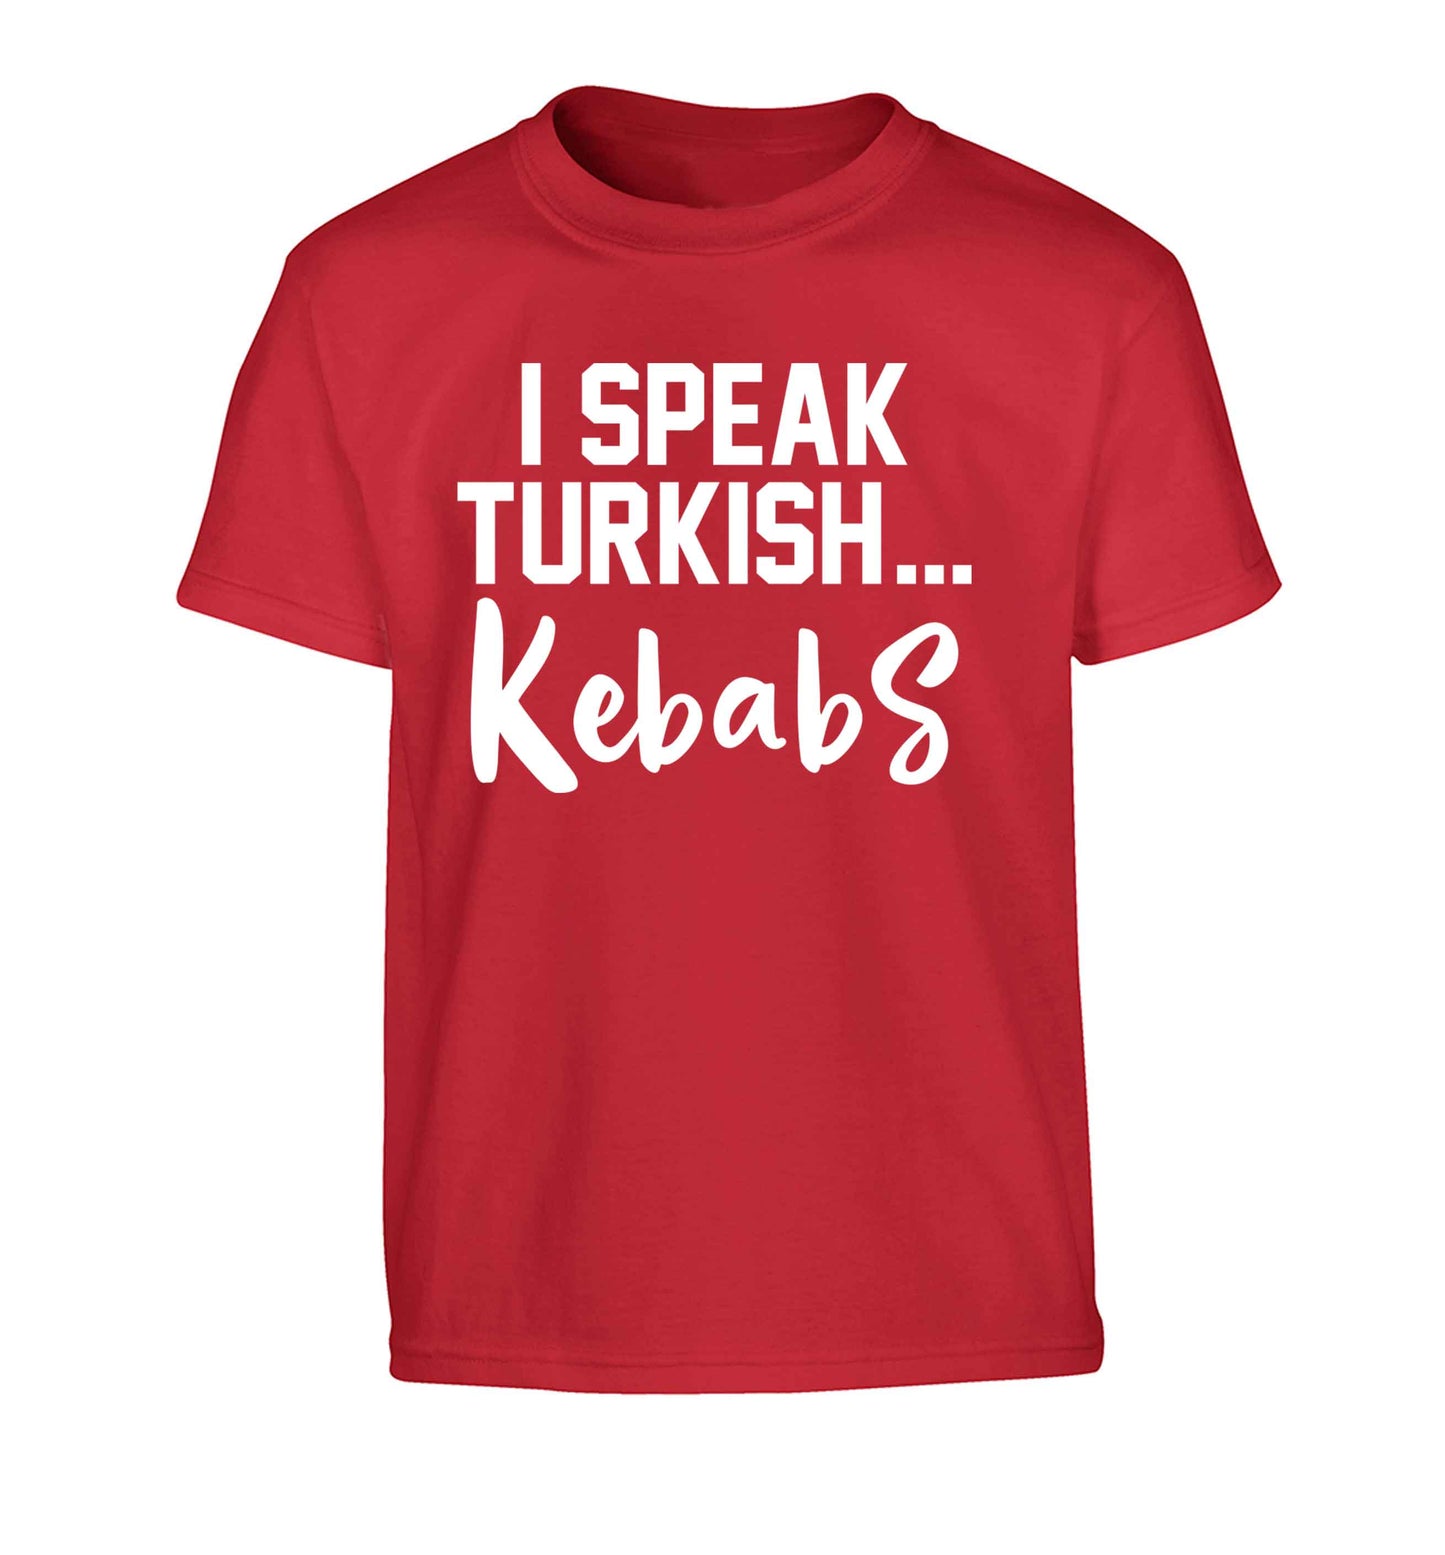 I speak Turkish...kebabs Children's red Tshirt 12-13 Years